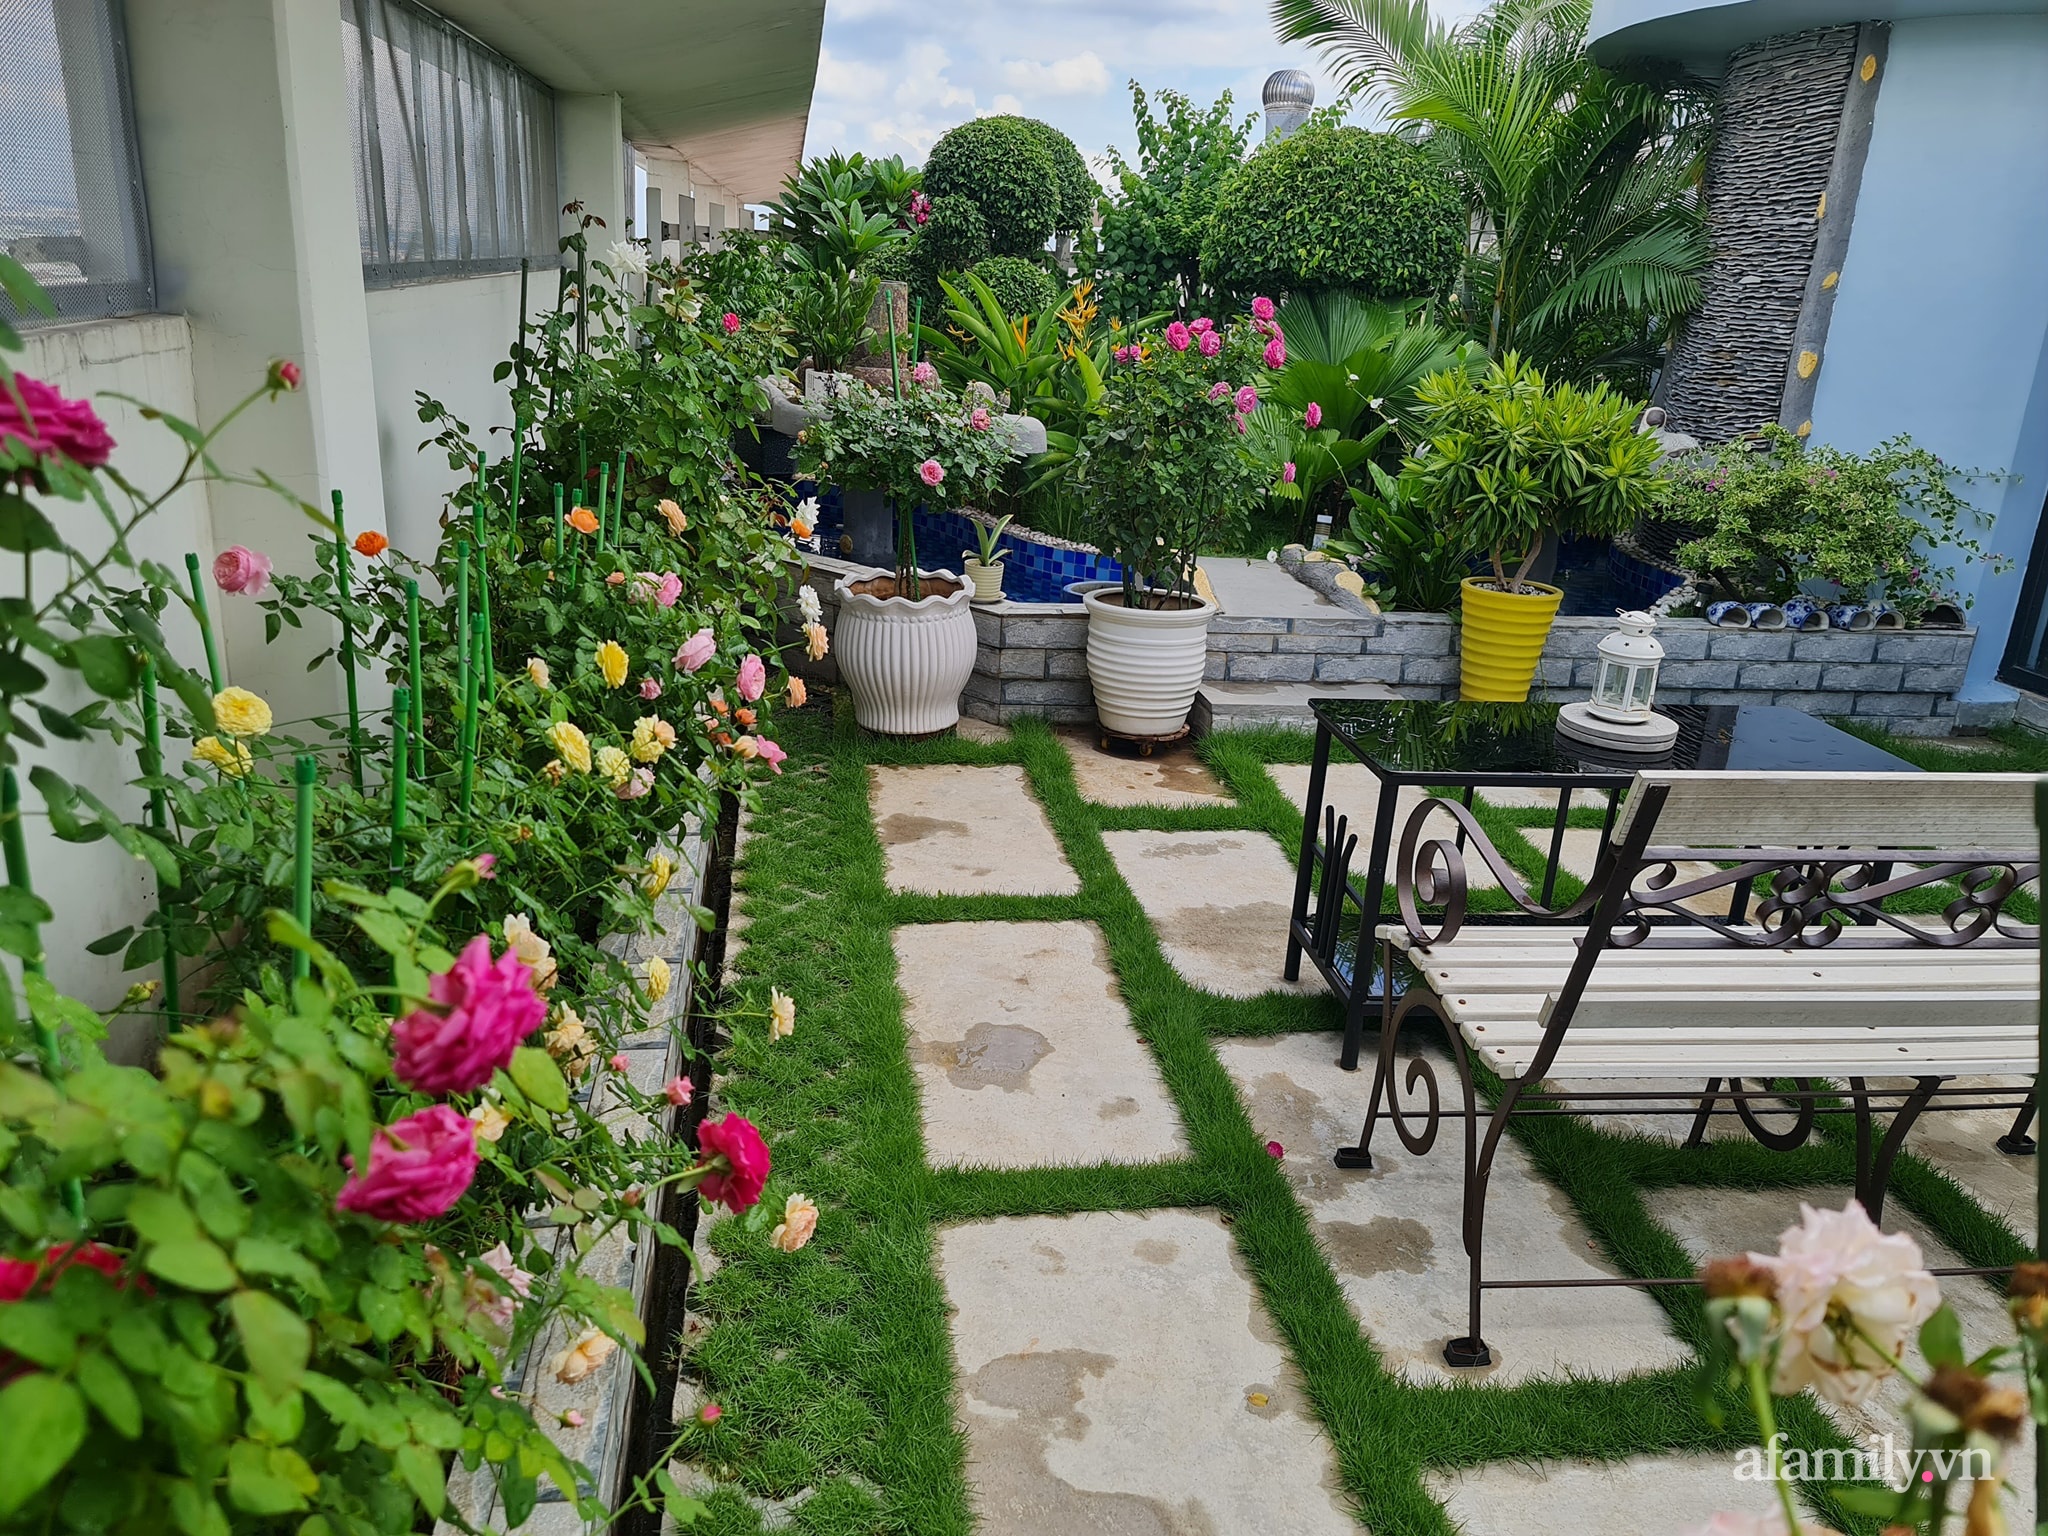 Đắm say trước vẻ đẹp ngọt lịm tim của vườn hồng rực rỡ trên sân thượng ở Bình Dương - Ảnh 4.